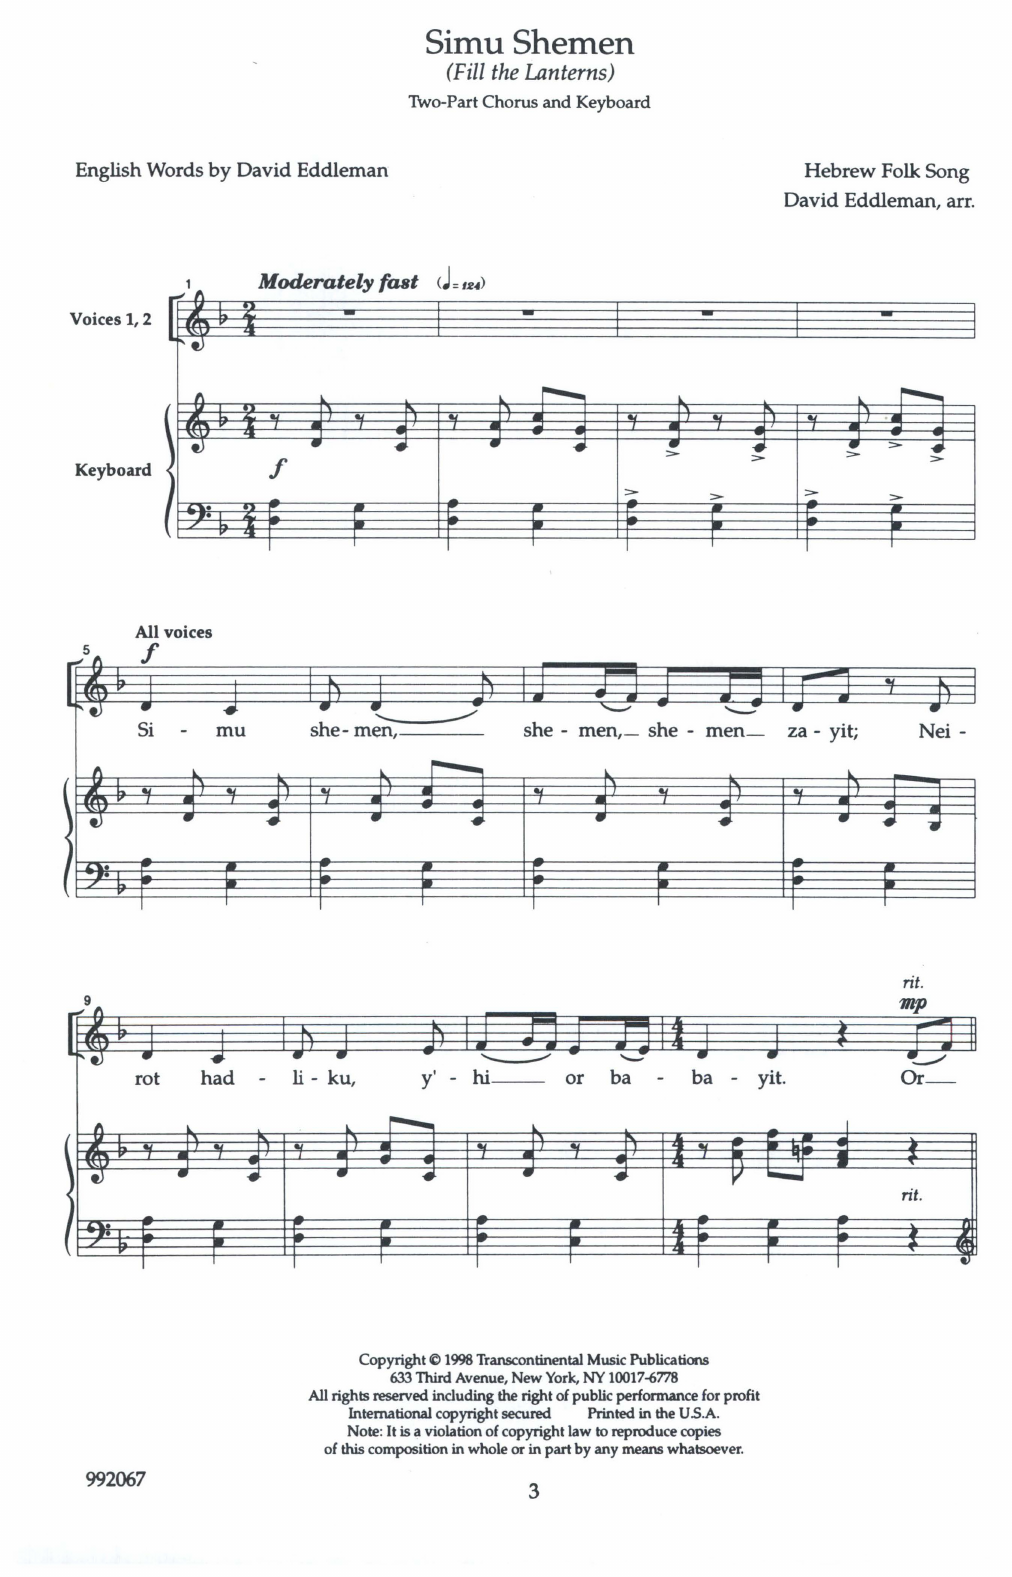 David Eddleman Simu Shemen (Fill the Lanterns) Sheet Music Notes & Chords for 2-Part Choir - Download or Print PDF